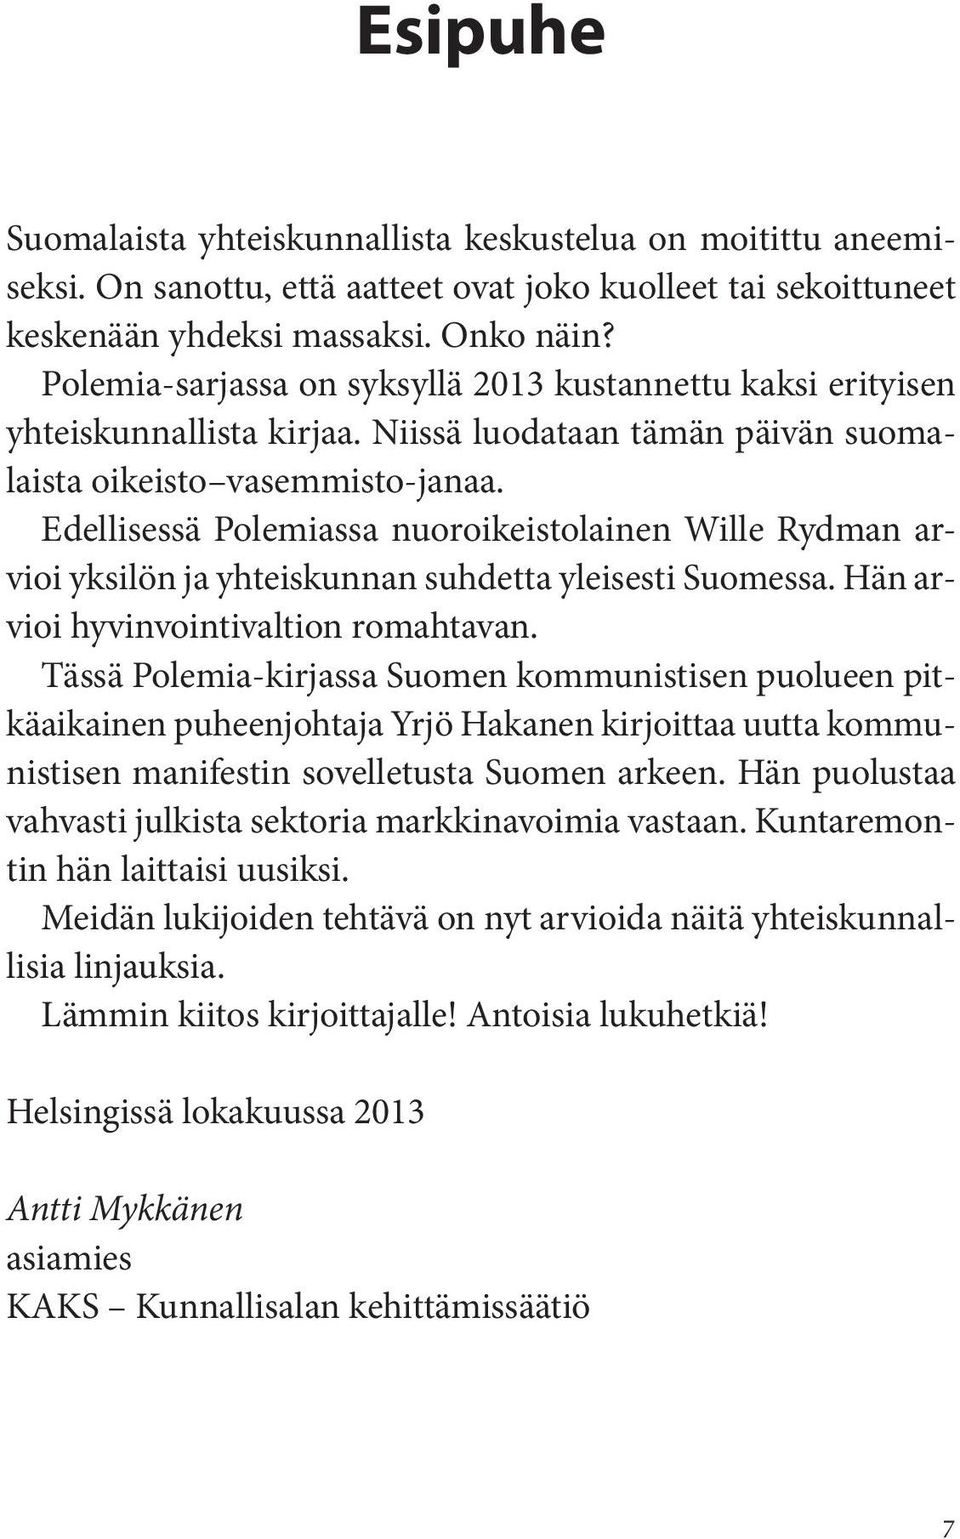 Edellisessä Polemiassa nuoroikeistolainen Wille Rydman arvioi yksilön ja yhteiskunnan suhdetta yleisesti Suomessa. Hän arvioi hyvinvointivaltion romahtavan.